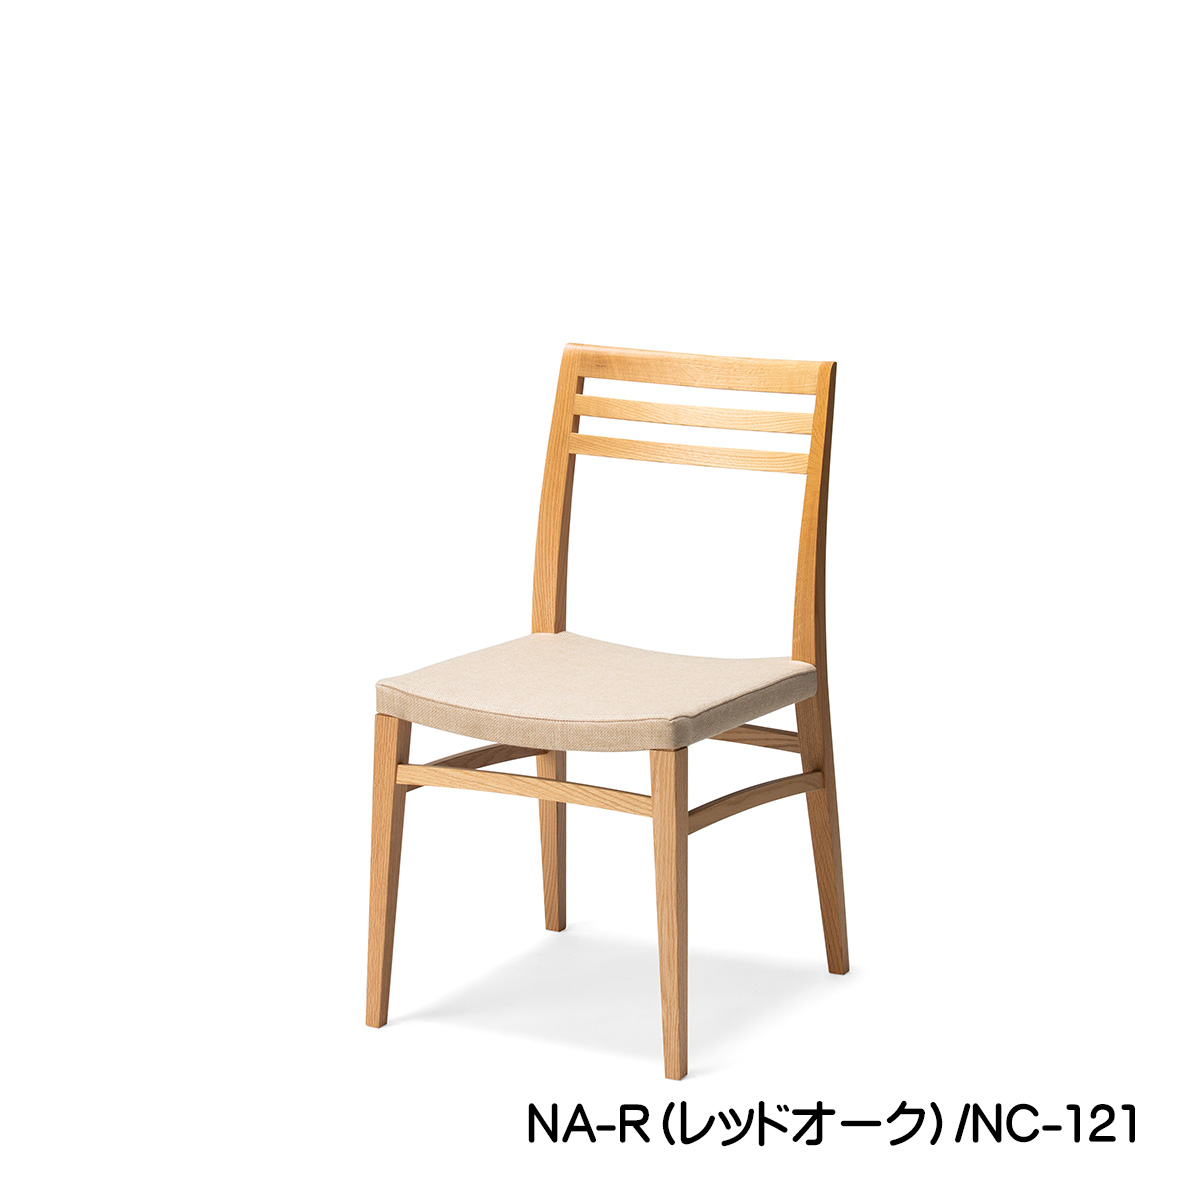 ダイニングチェアー「FIKA（フィーカ）」のナチュラル色は、レッドオーク材の風合いを最大限に生かした椅子です。